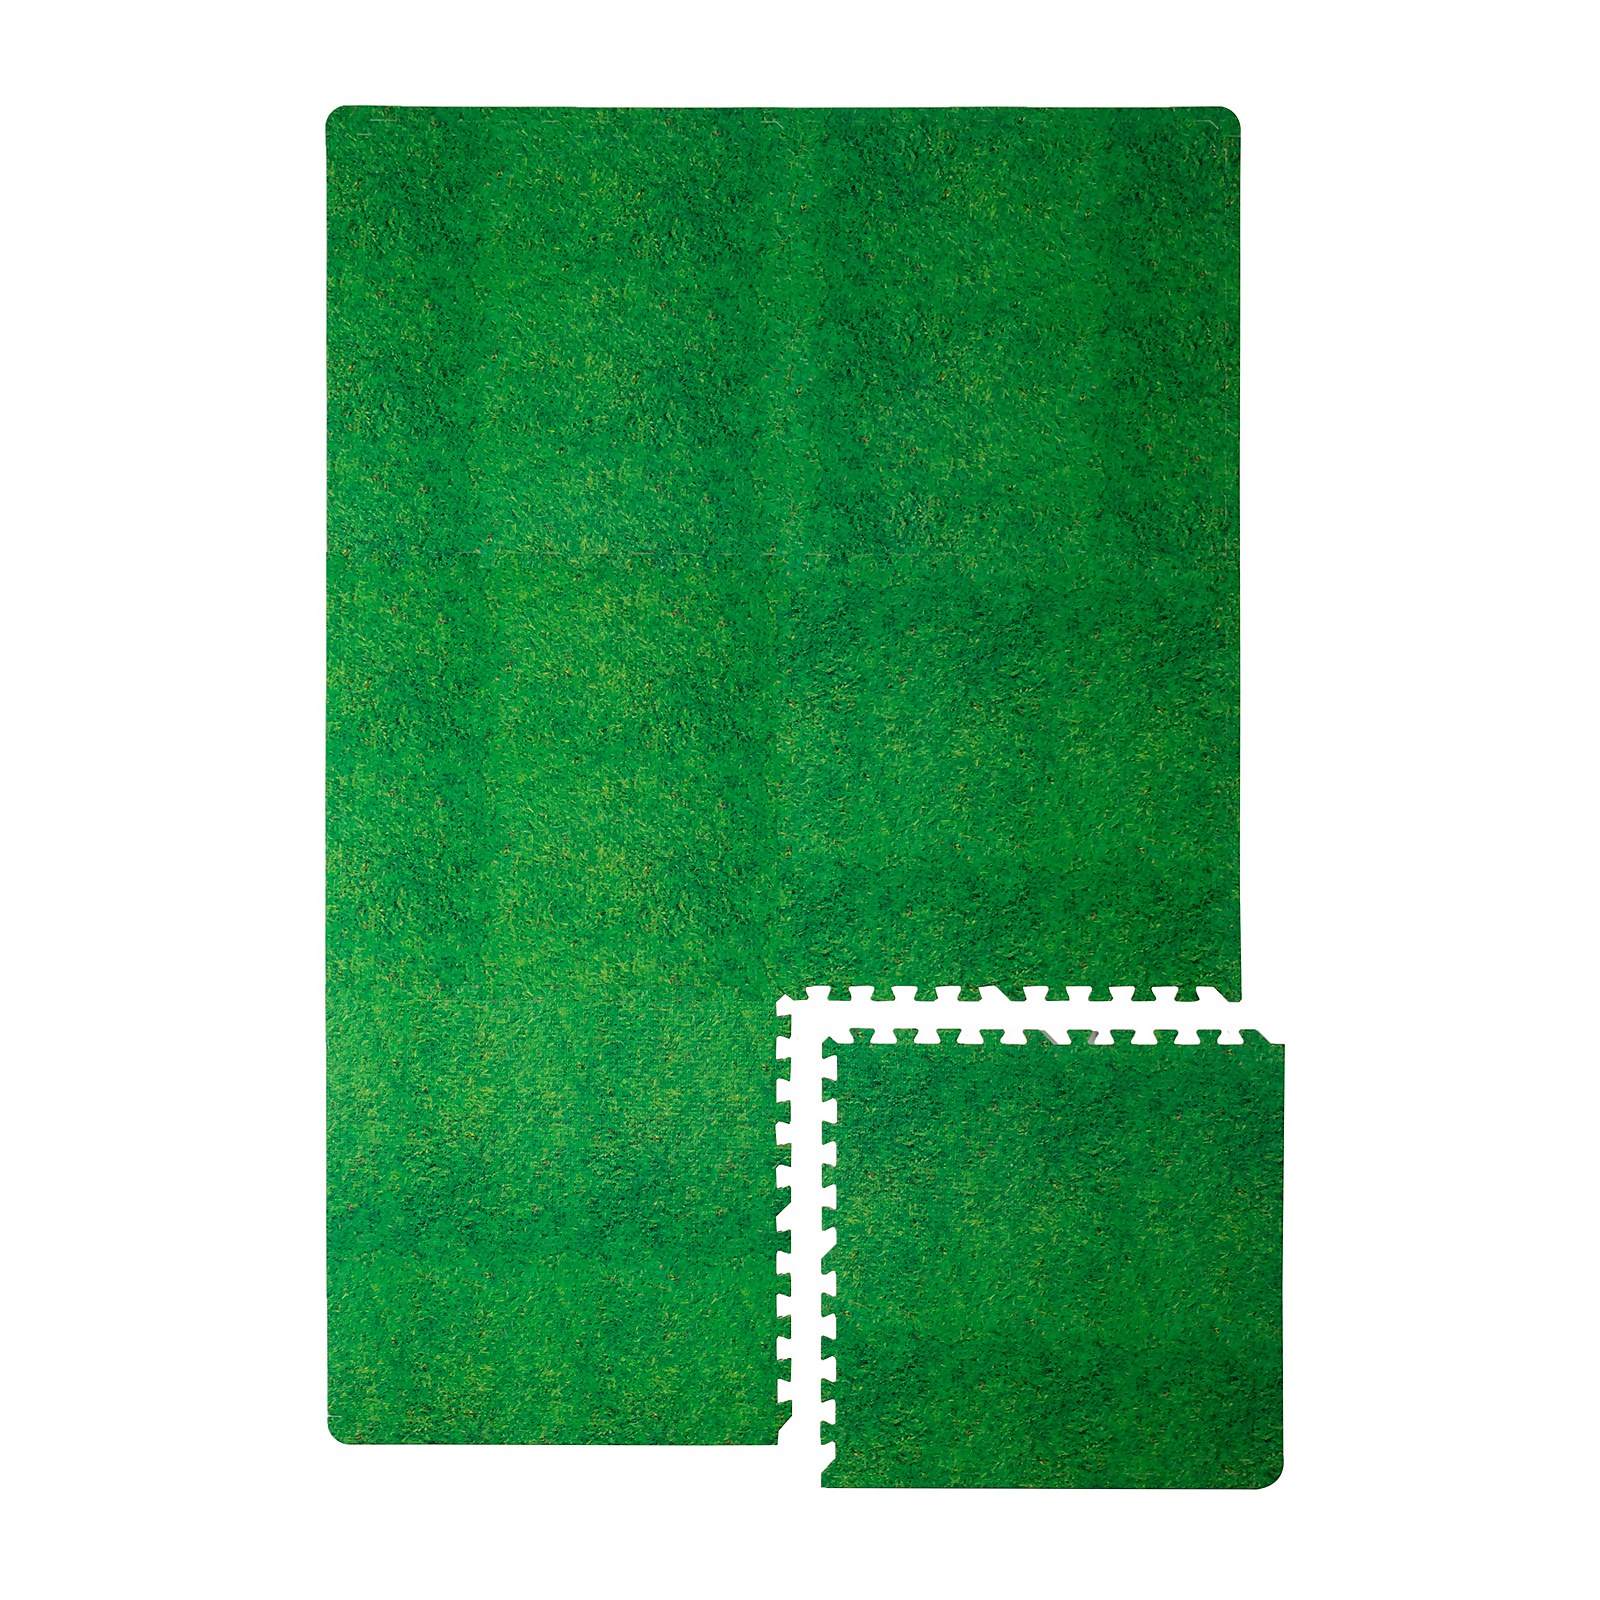 Photo of Homebase Grass Design Eva Interlocking Play Mats - 6 Pack